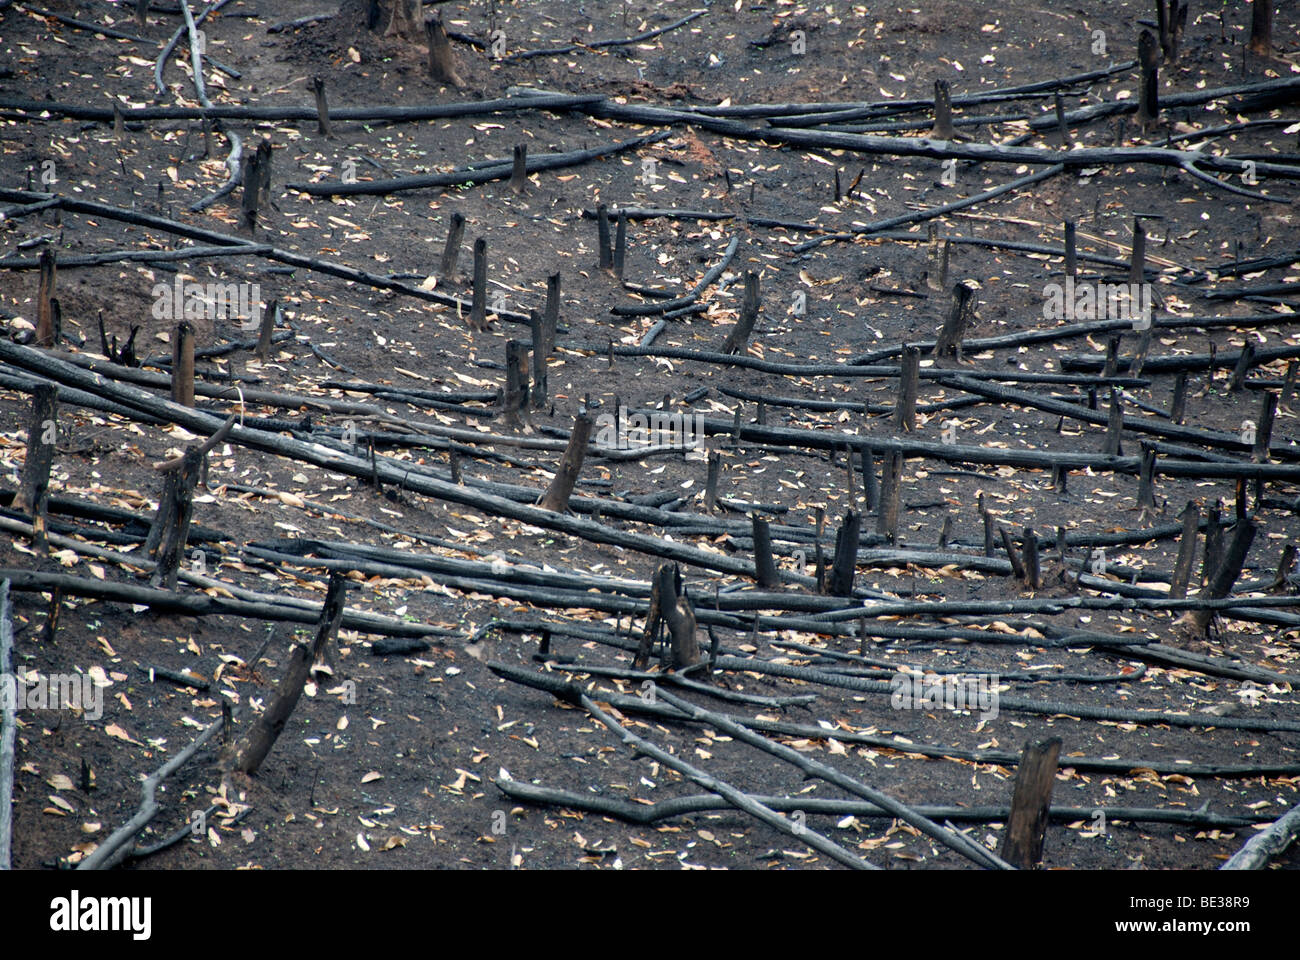 La destruction des forêts, la destruction du paysage par les incendies de forêt, les brûlis, les souches d'arbre brûlé, bois mort et avant noir Banque D'Images